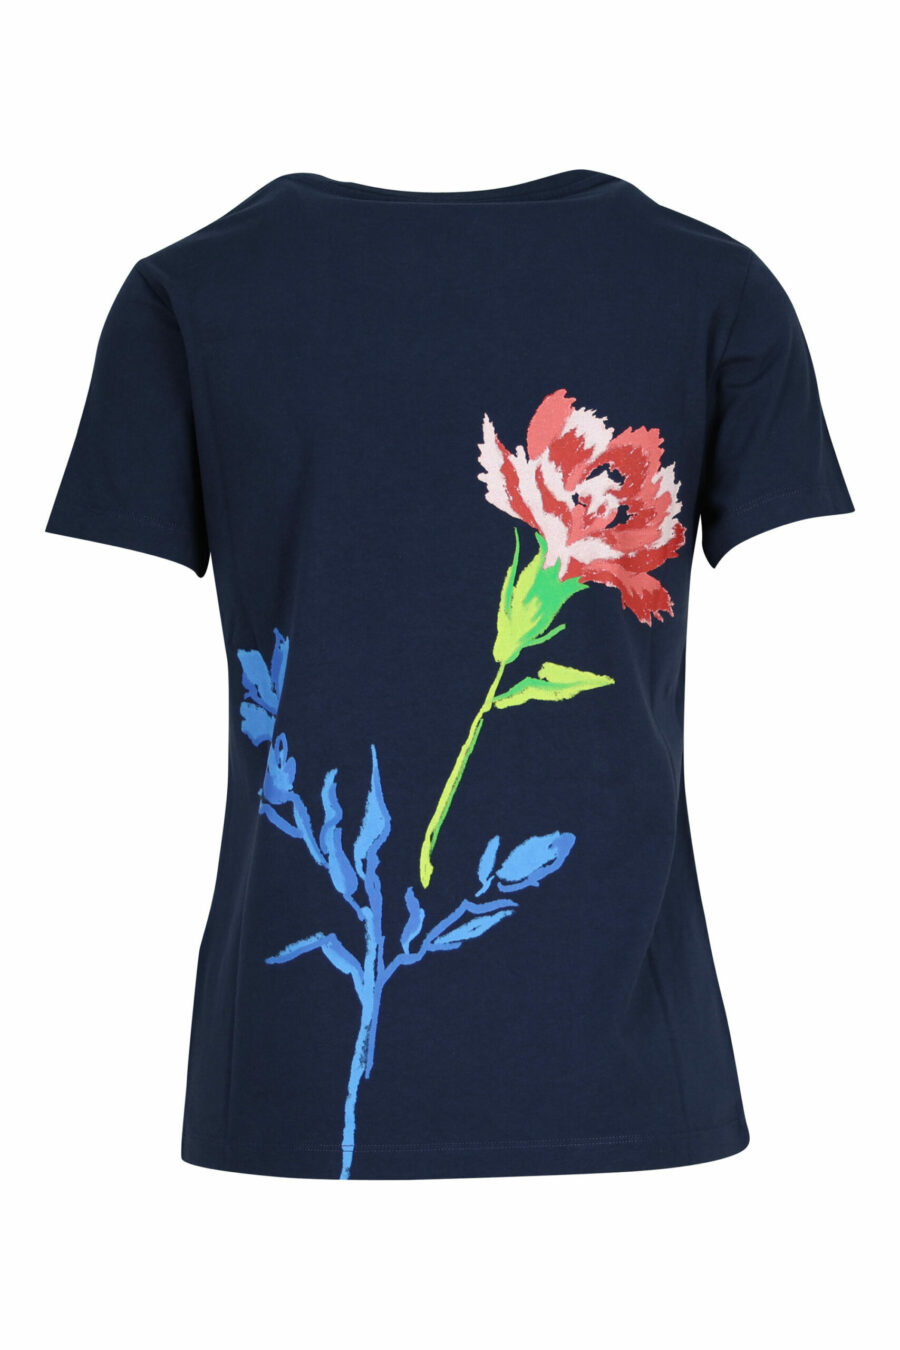 Camiseta azul oscuro con minilogo "drawn flower" - 3612230587366 1 scaled